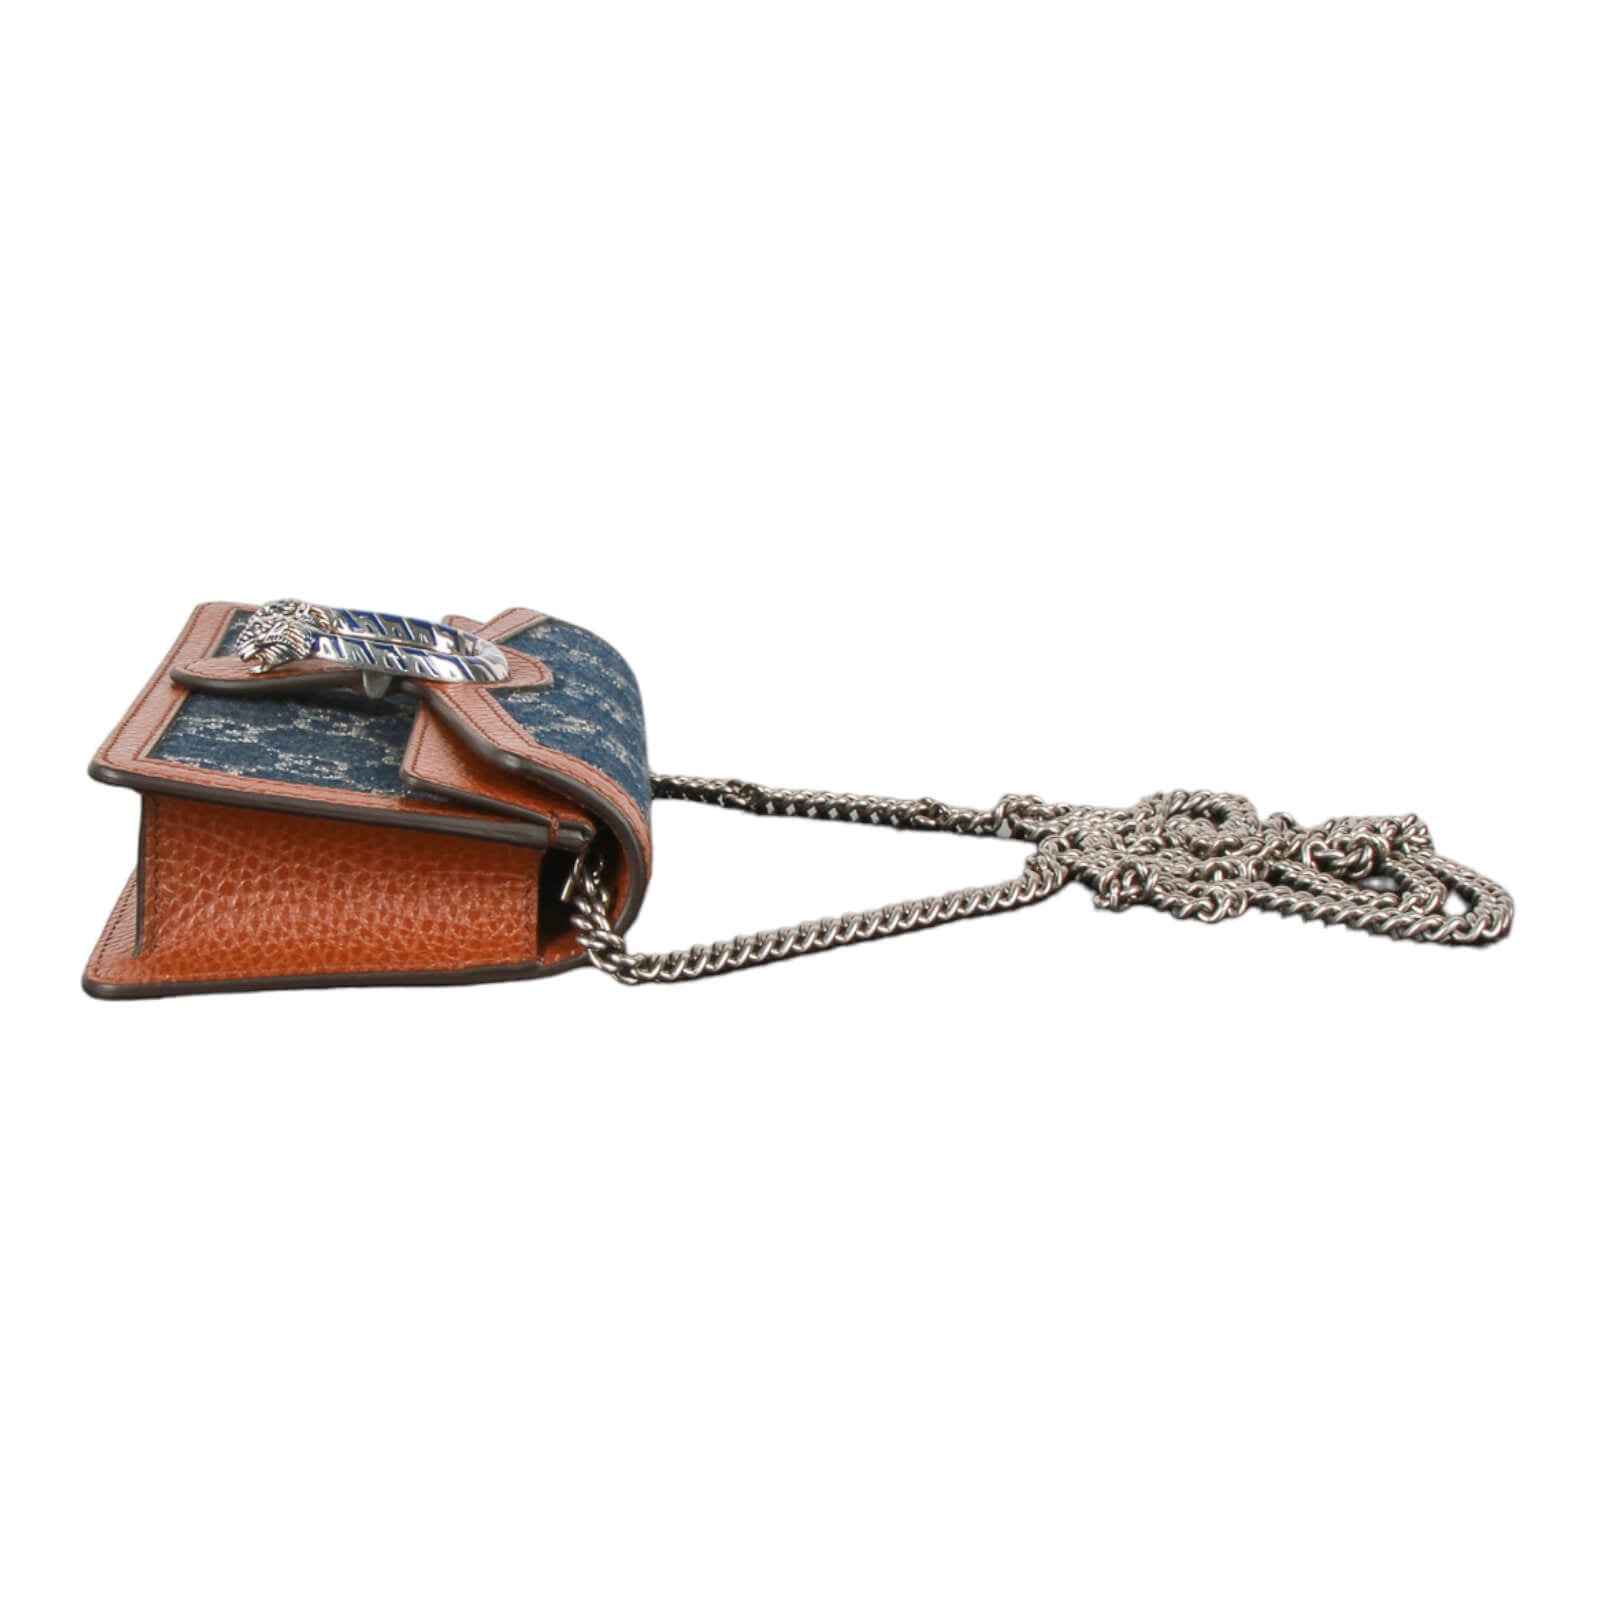 Dionysus messenger bag in cuir leather